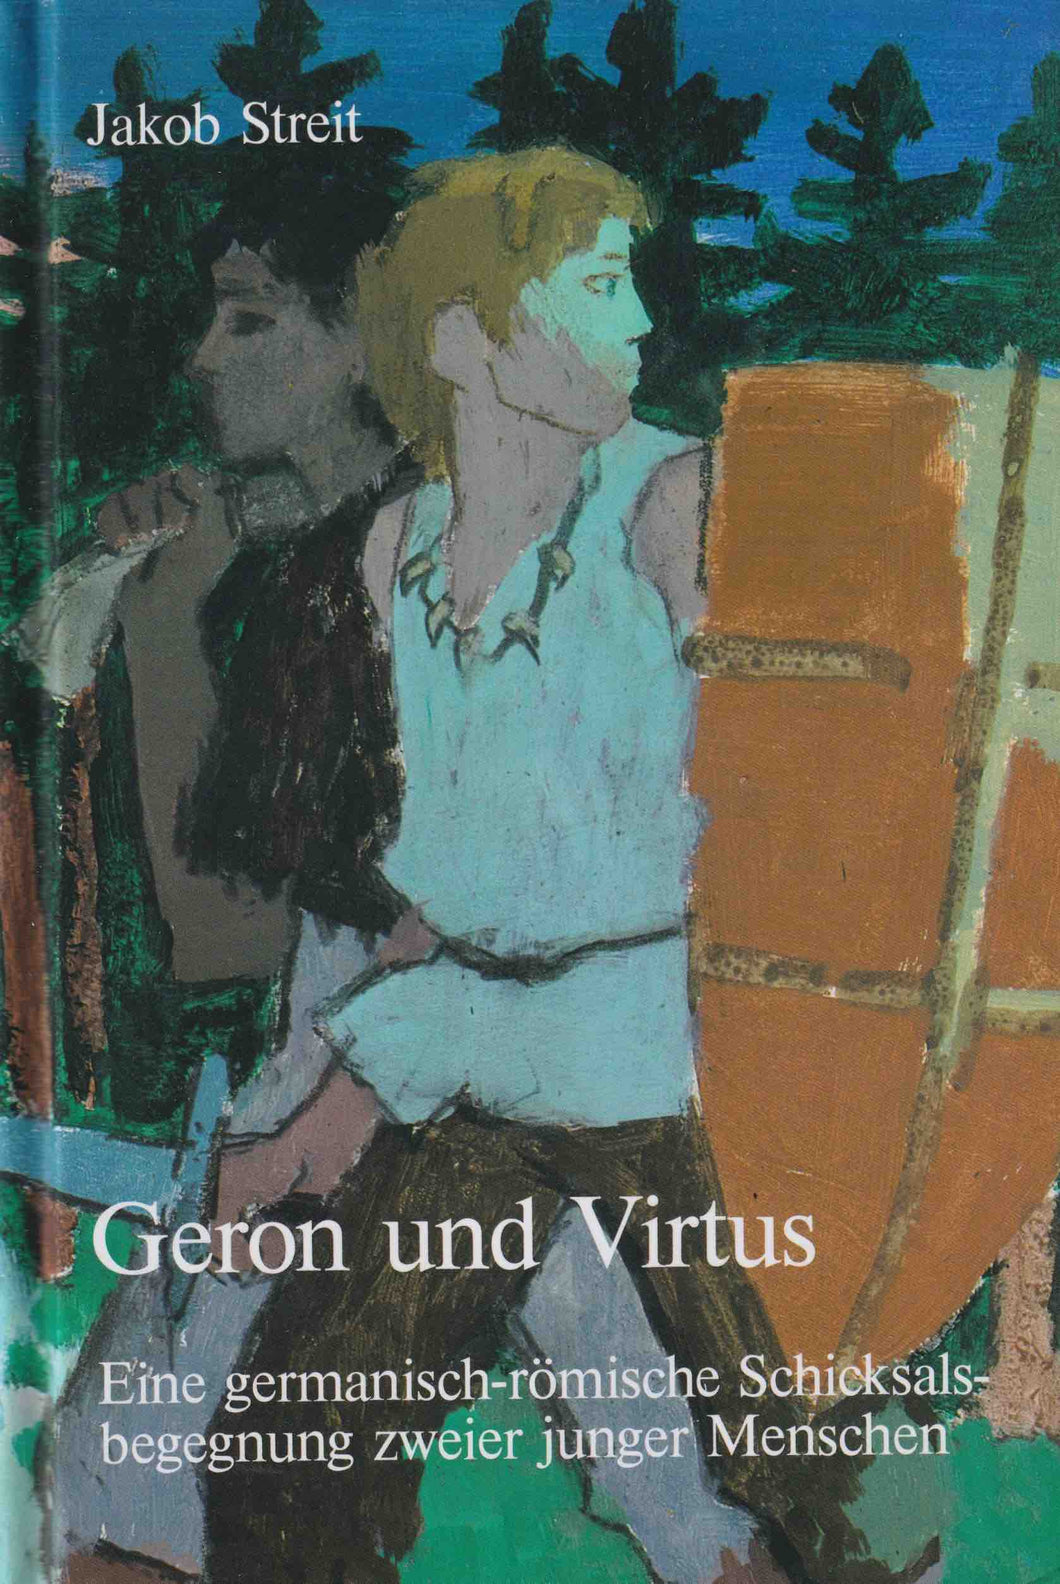 Geron und Virtus